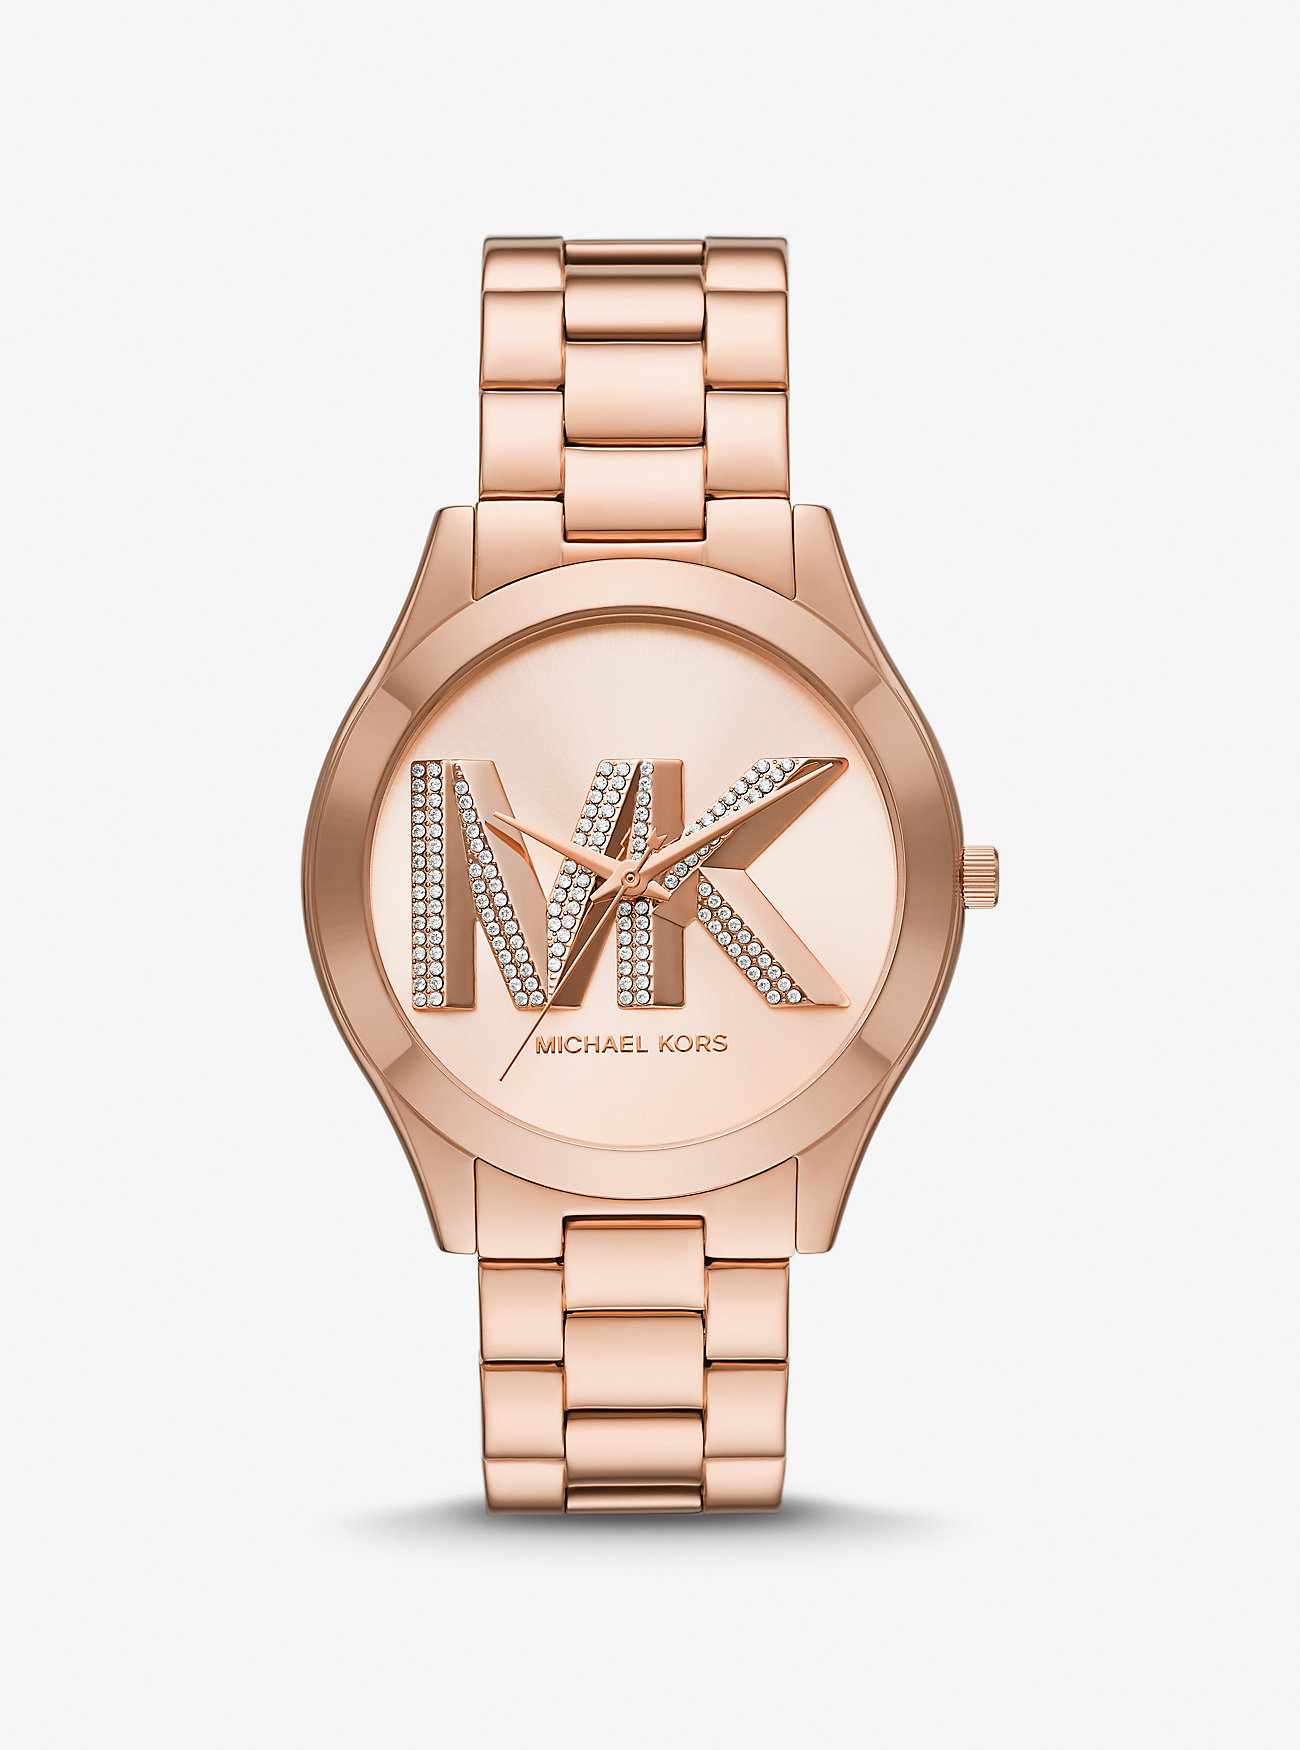 Узкие оверсайз-часы Runway оттенка розового золота Michael Kors, розовый